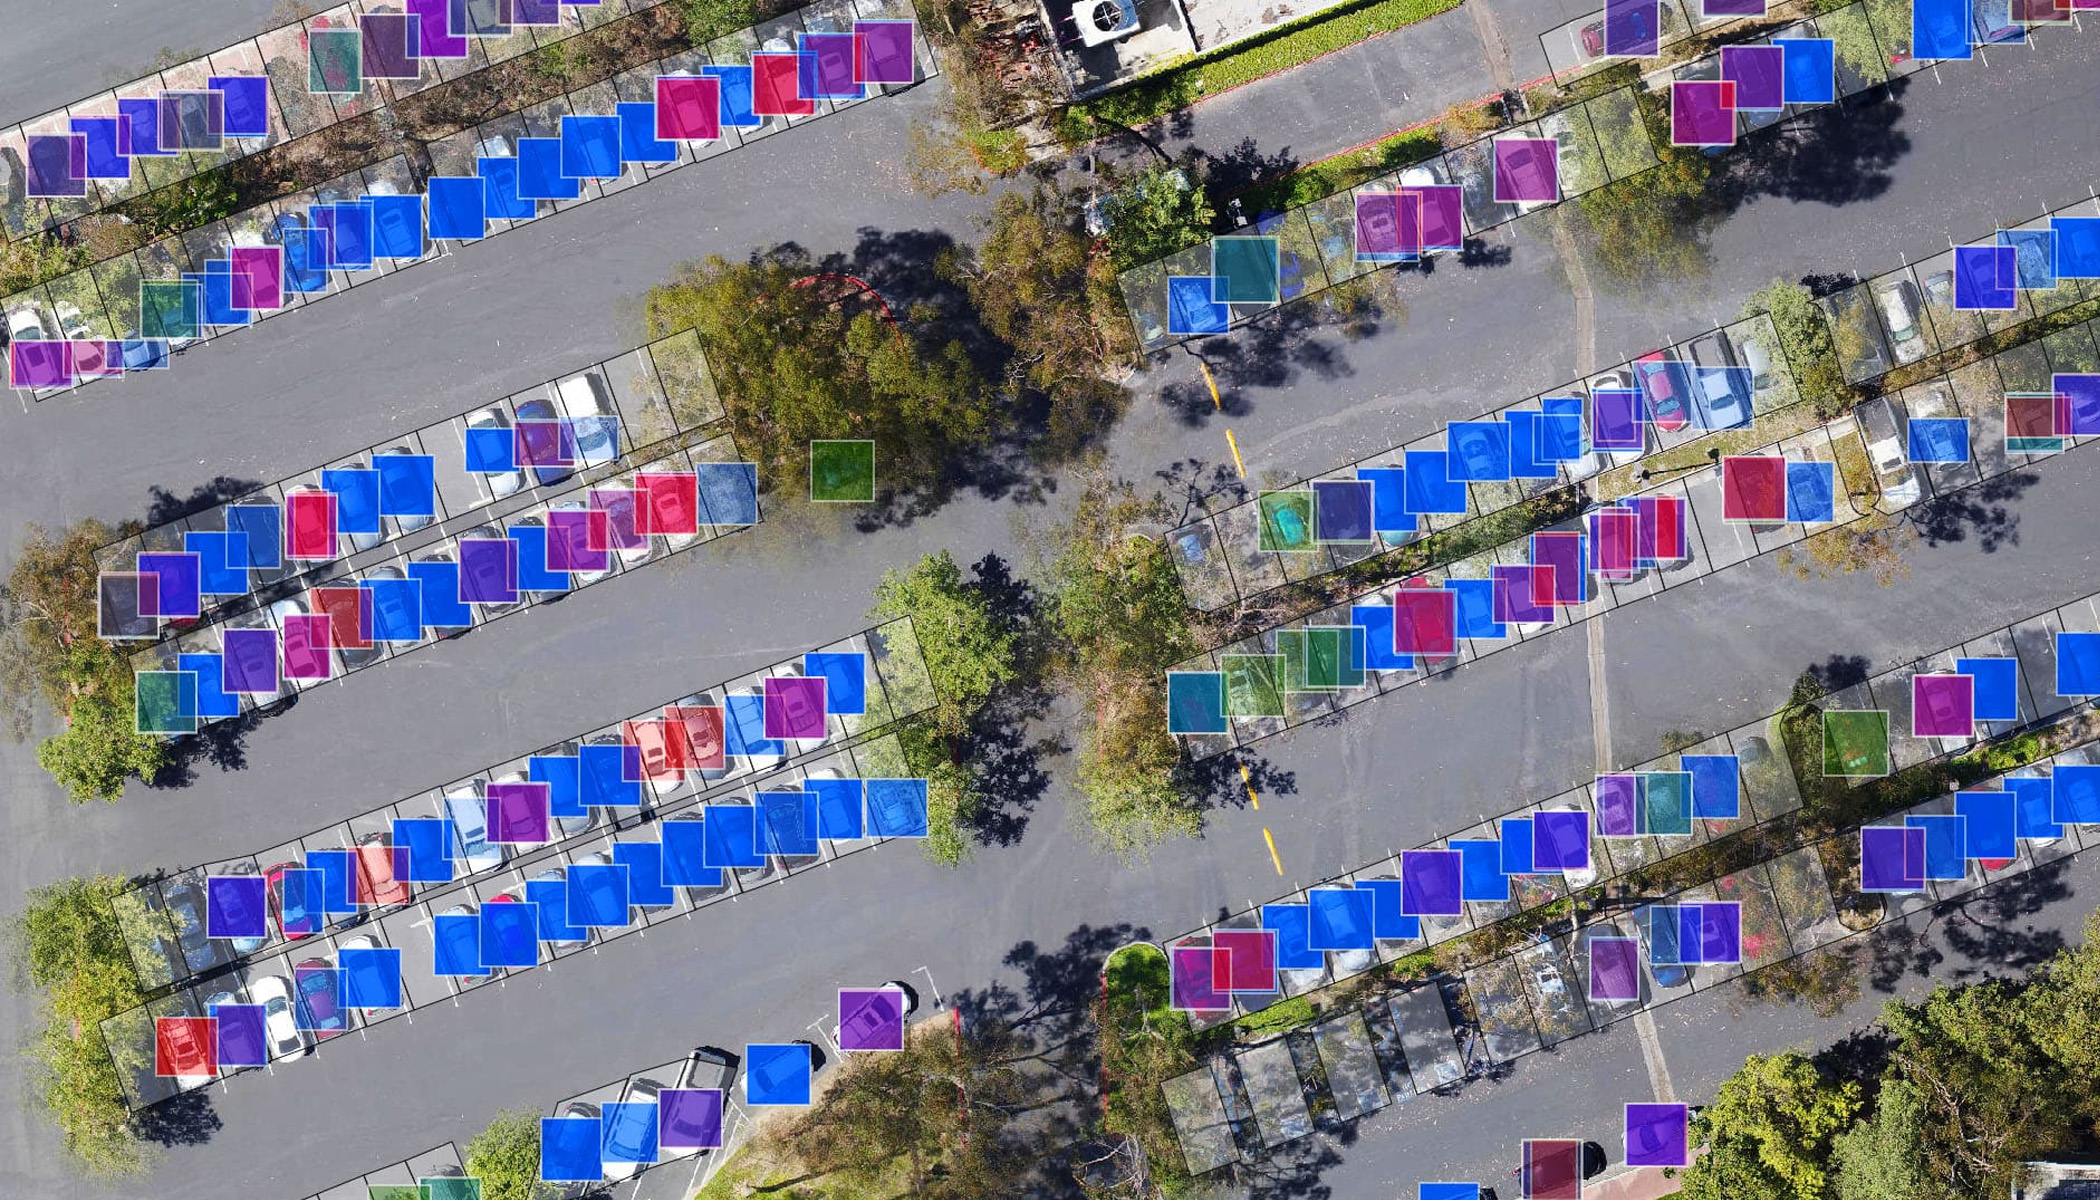 Вид с высоты птичьего полета на парковку с автомобилями, покрытыми синими, фиолетовыми, зелеными и розовыми квадратами